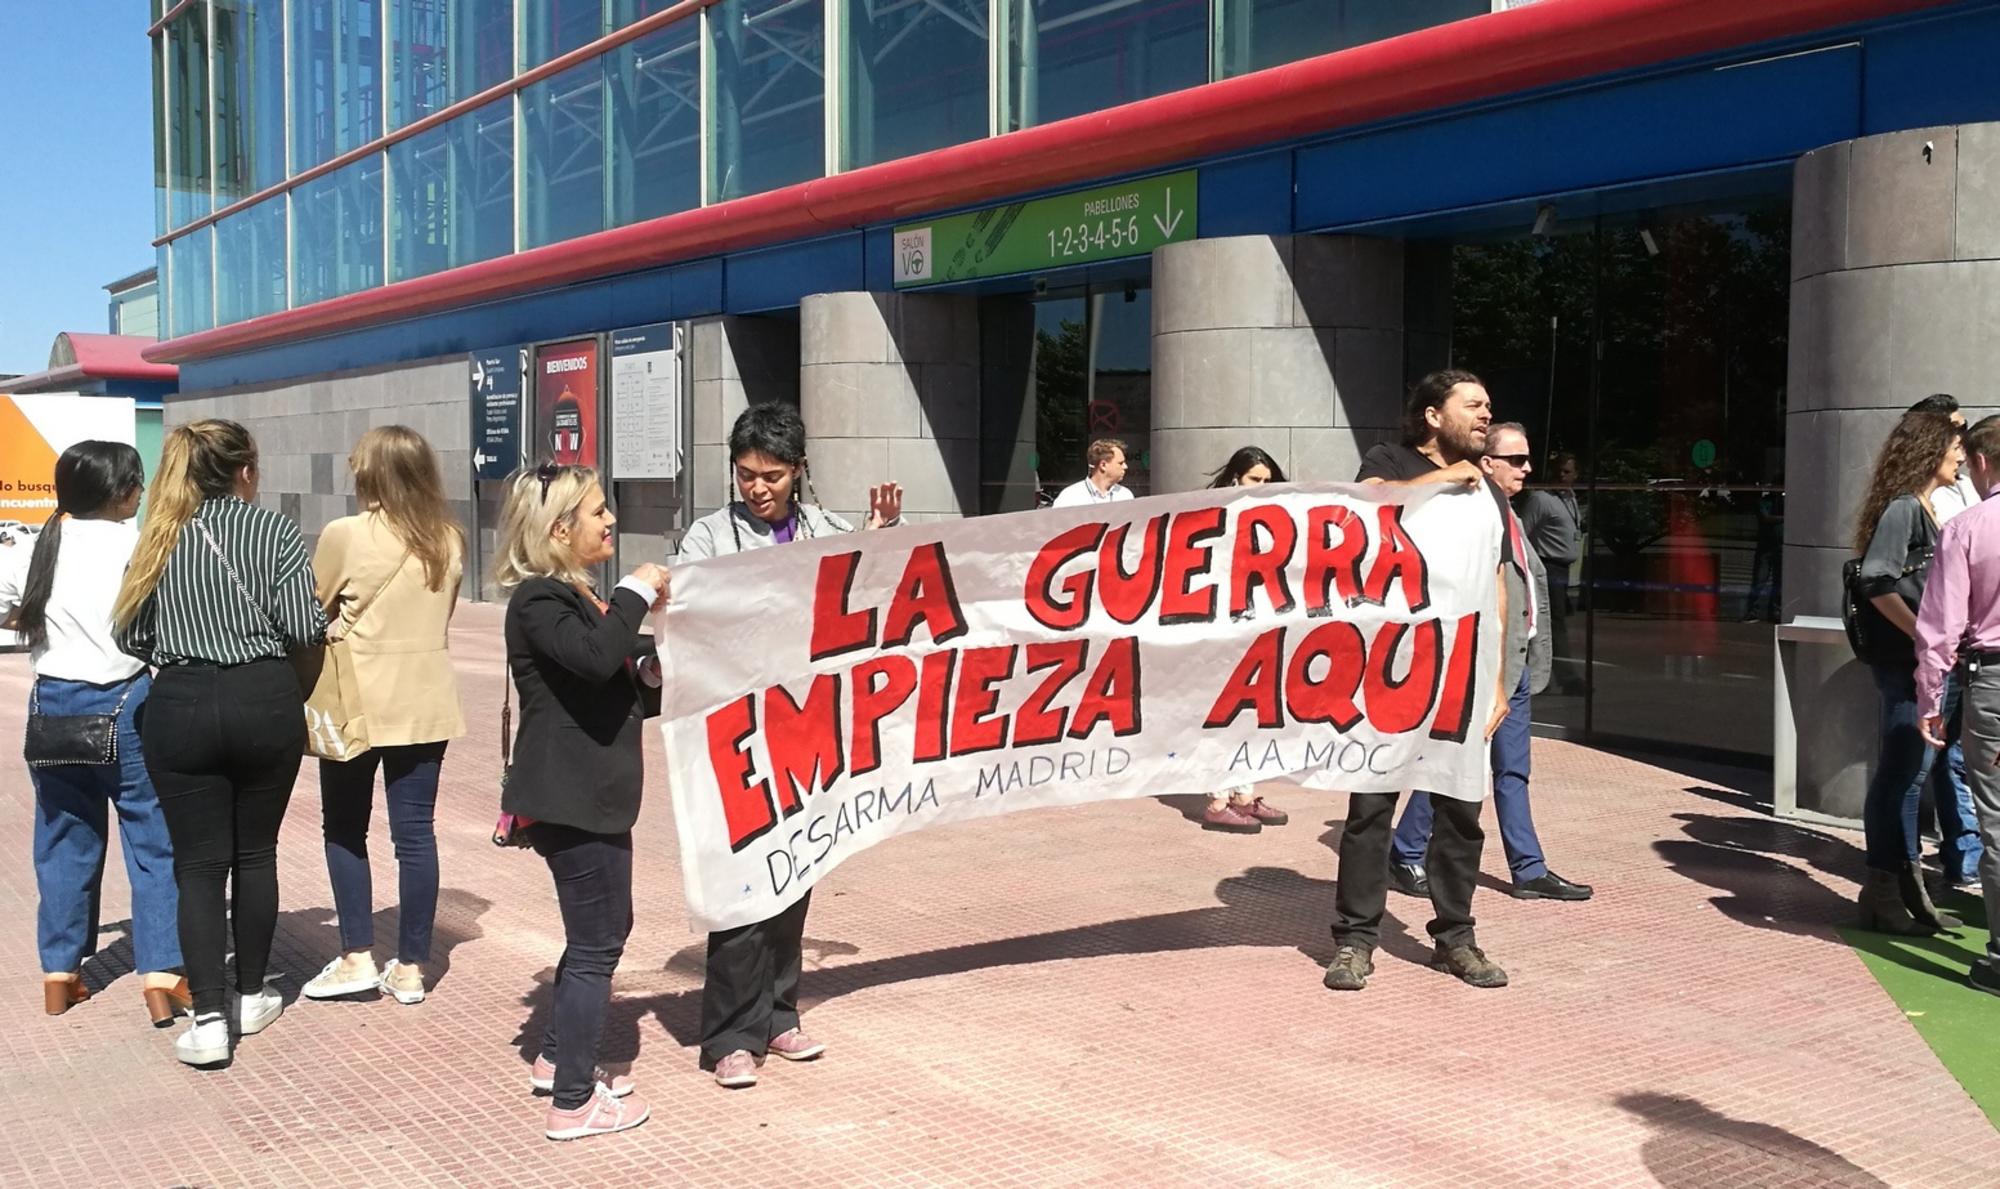 La guerra empieza aquí. Protesta en Madrid (2019).